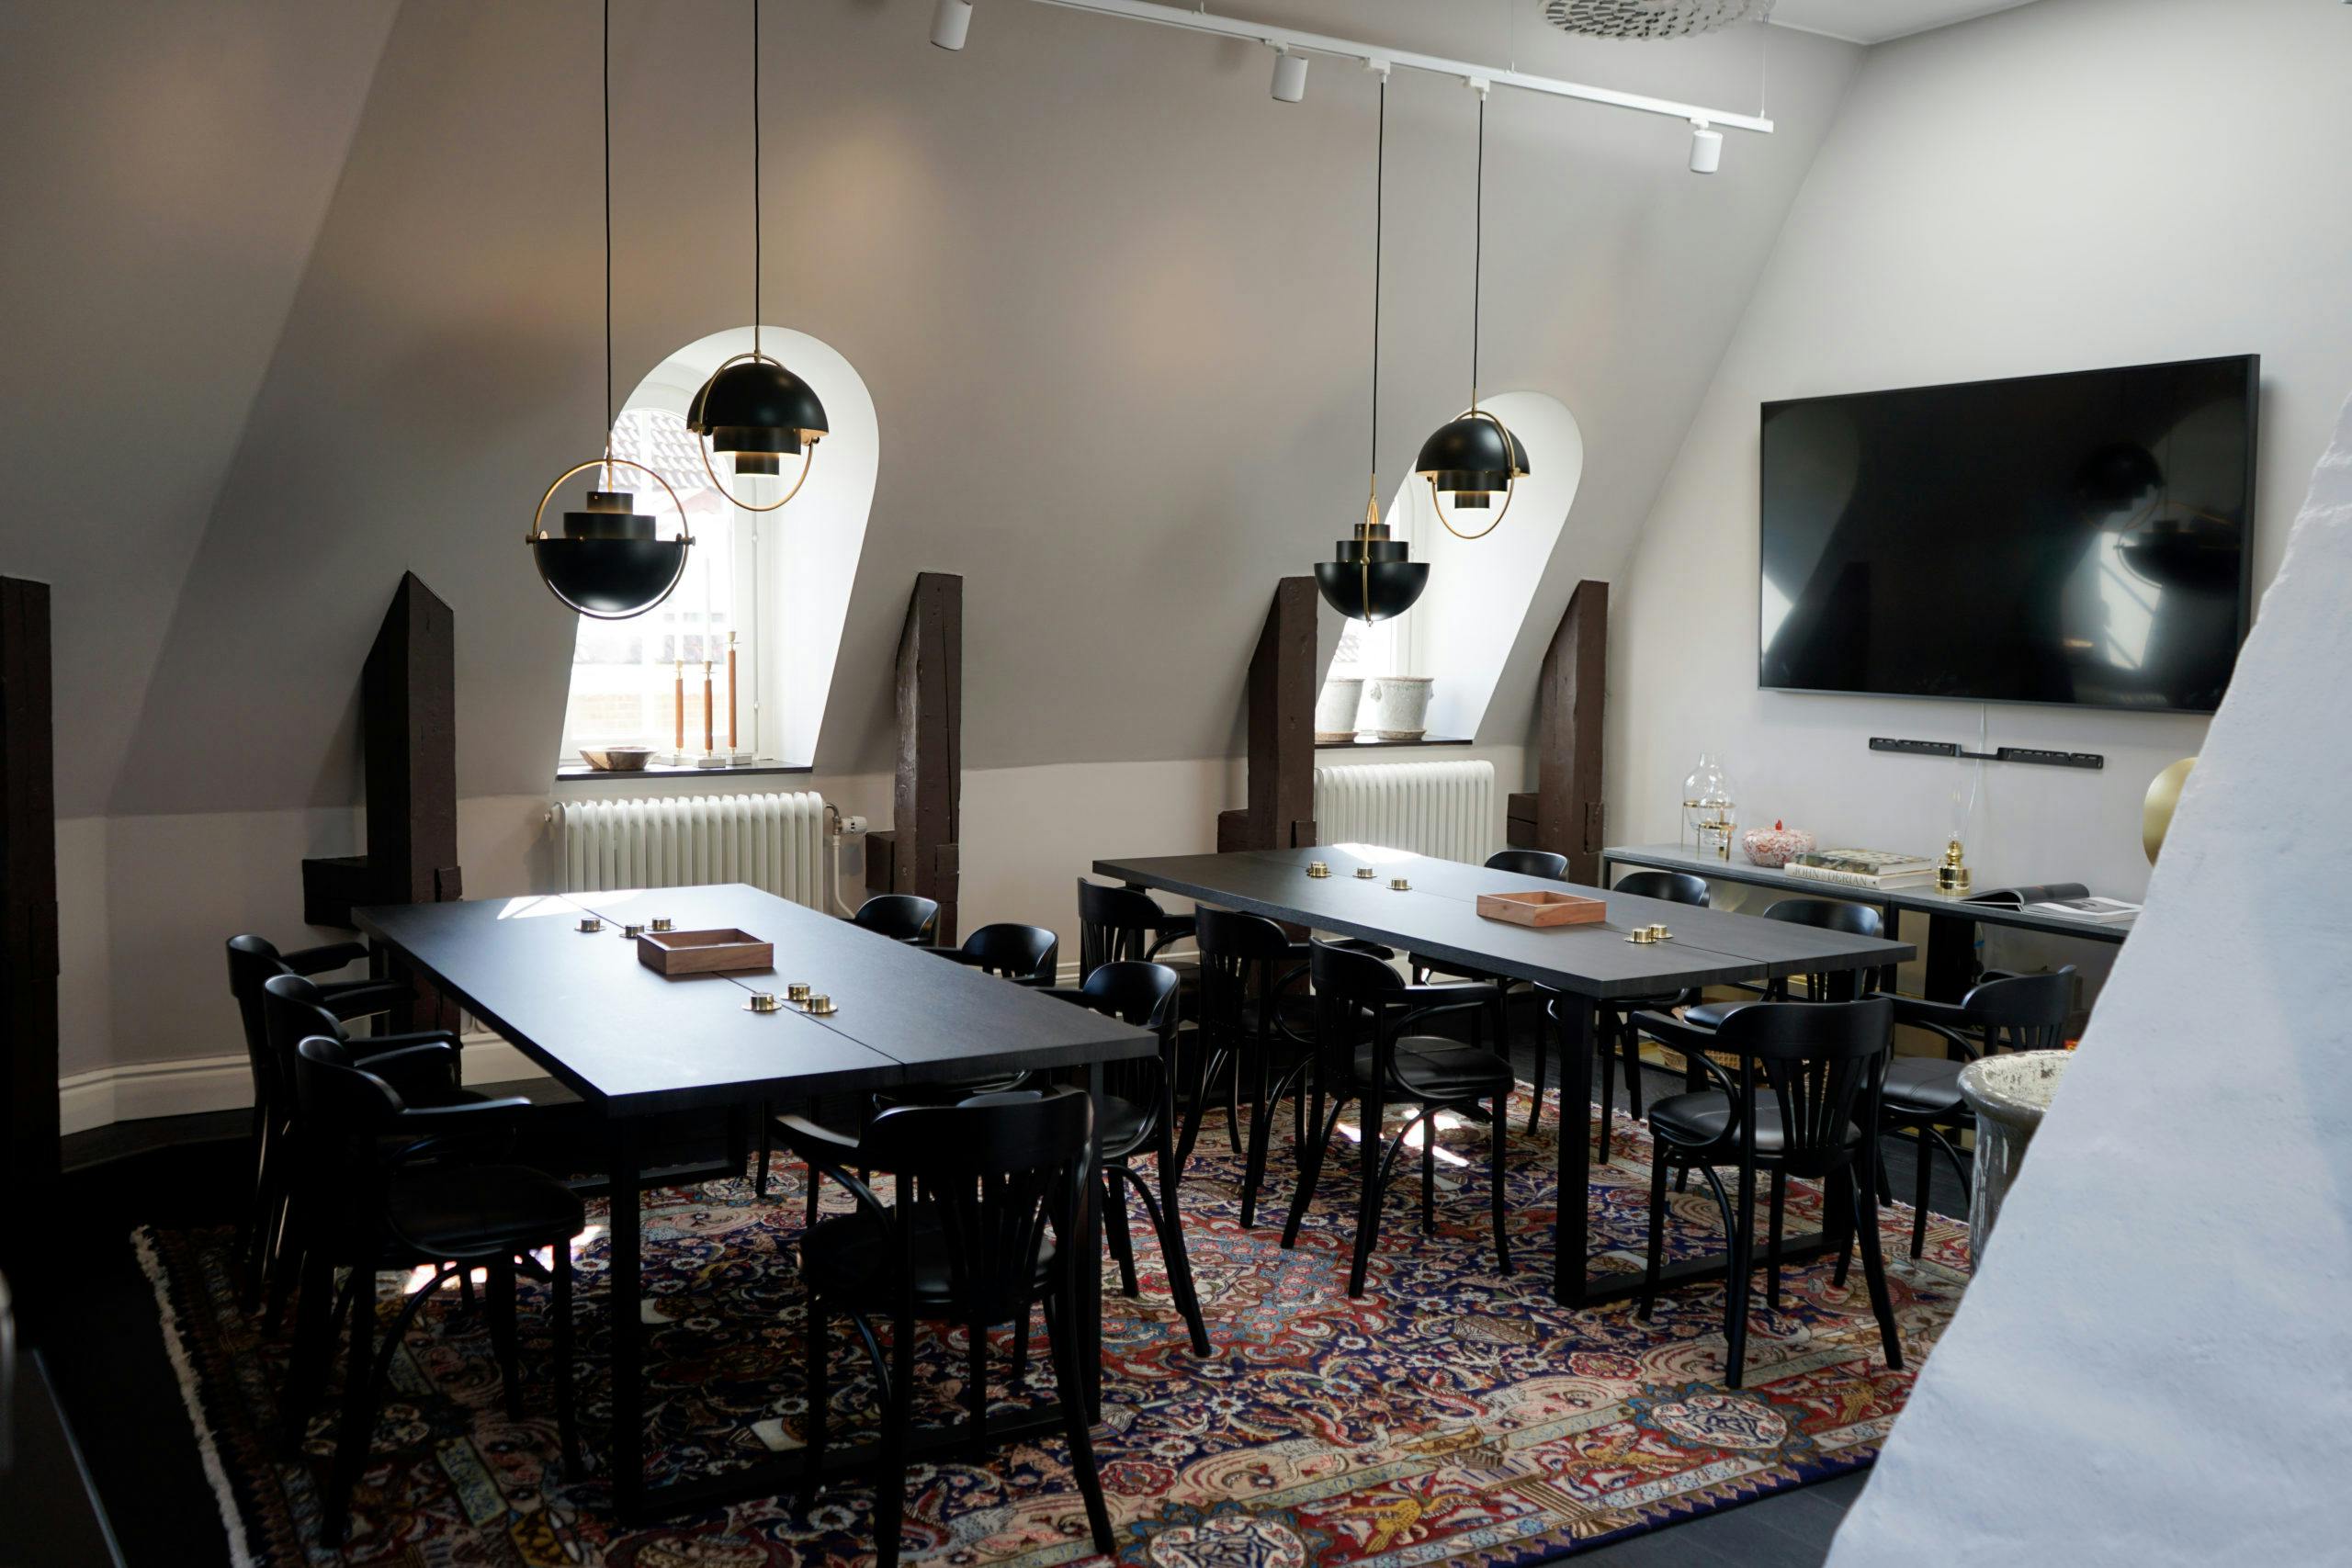 Matbord på Consids kontor i Nyköping